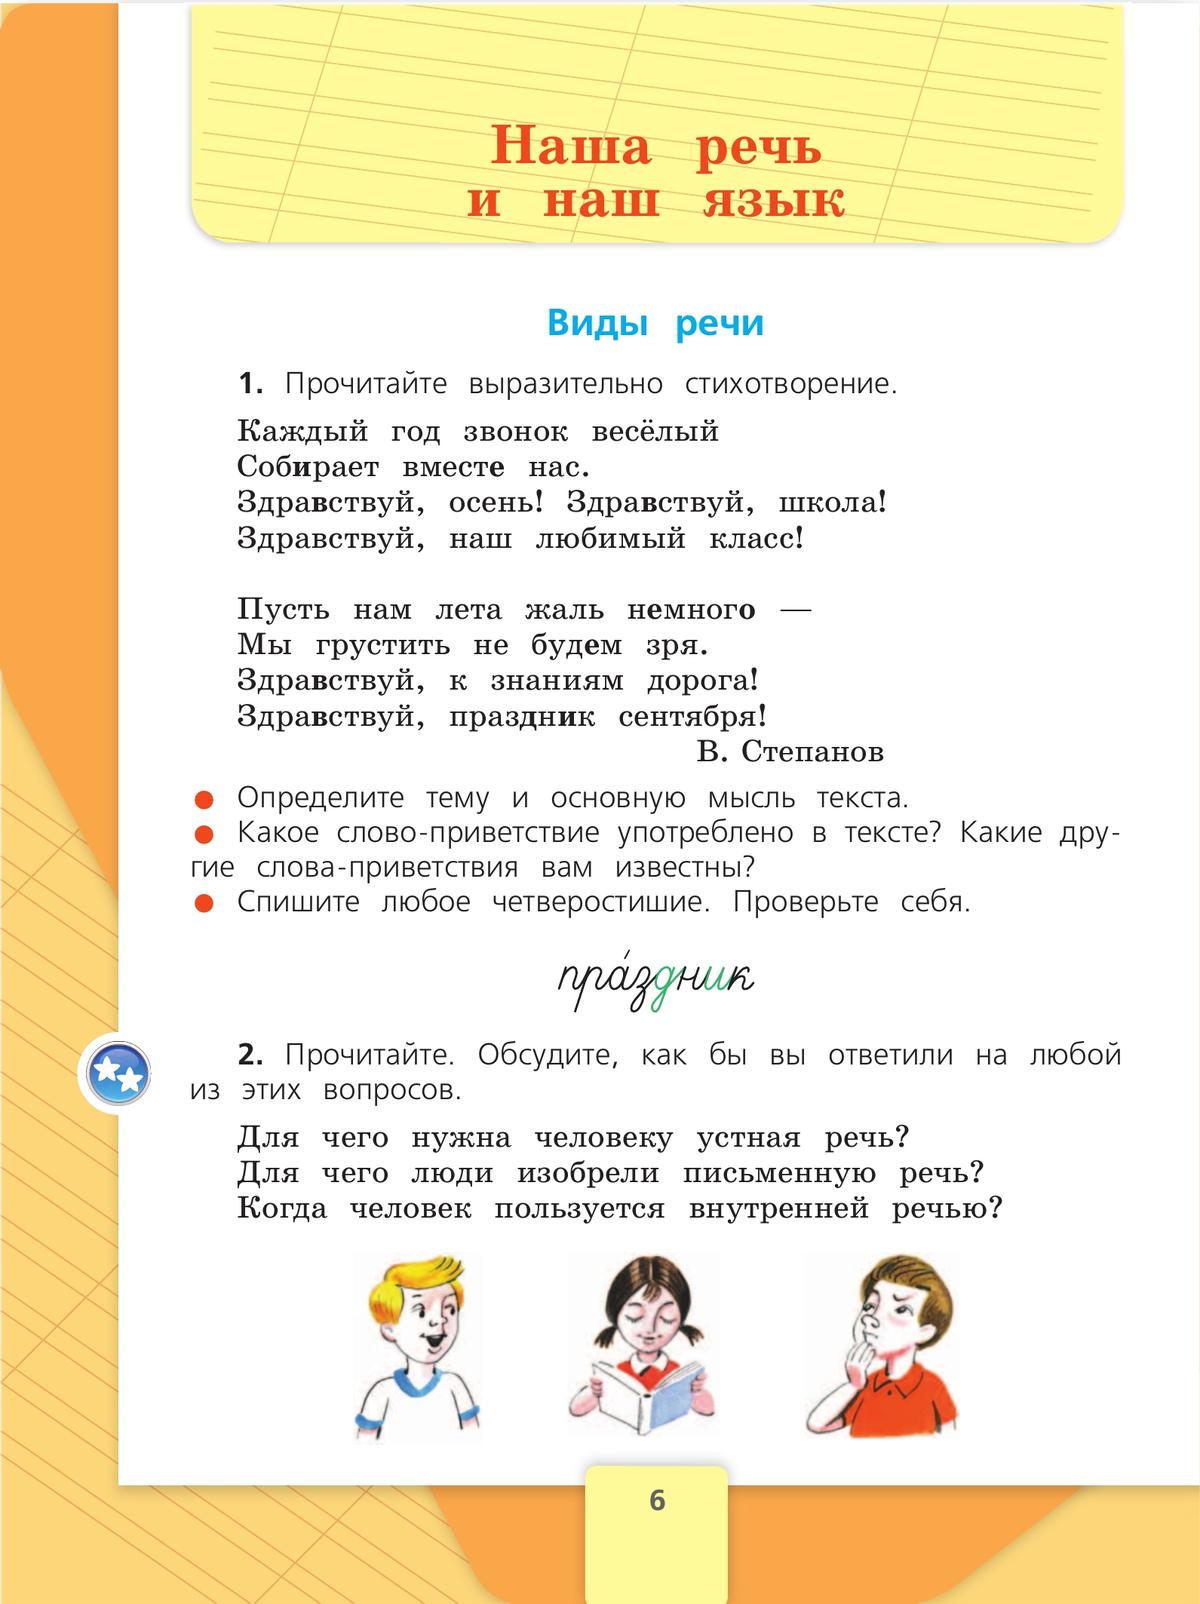 Русский язык. 3 класс. Учебник. В 2 ч. Часть 1 4